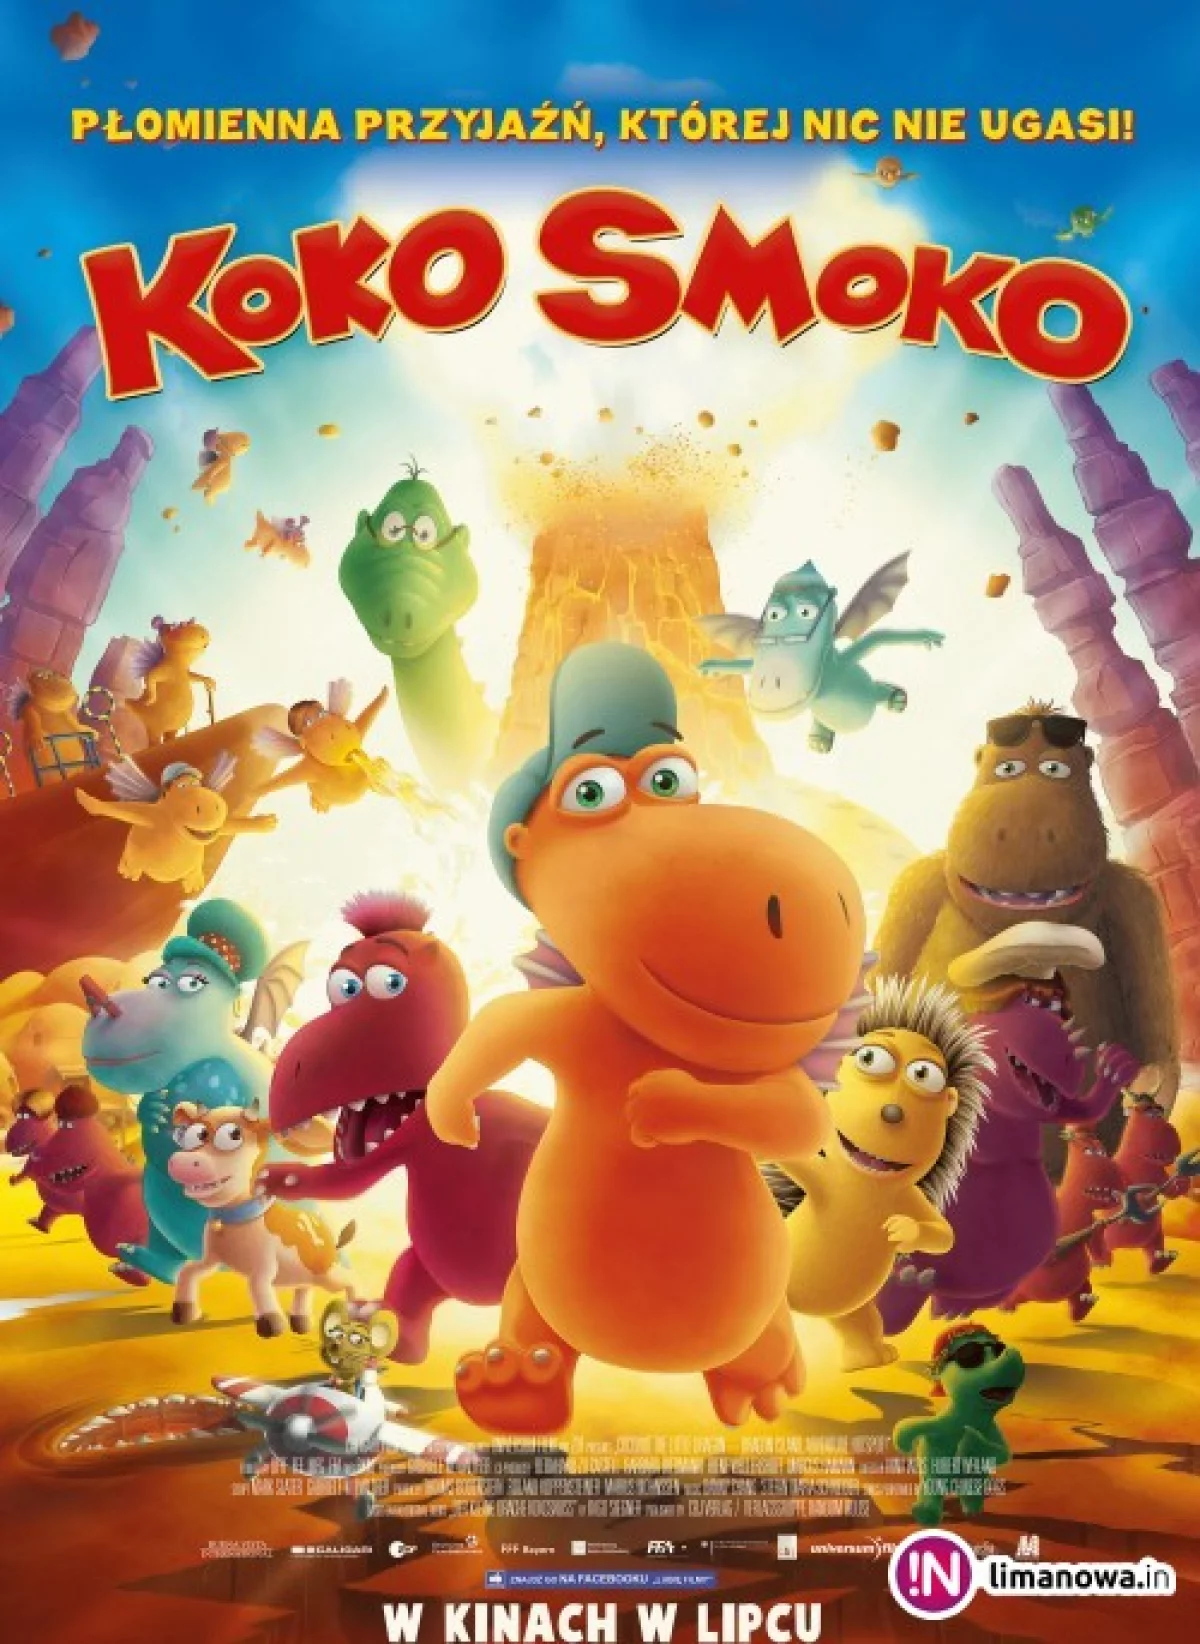 Premiera w kinie Klaps - „Koko Smoko” na ekranie od 24 lipca!